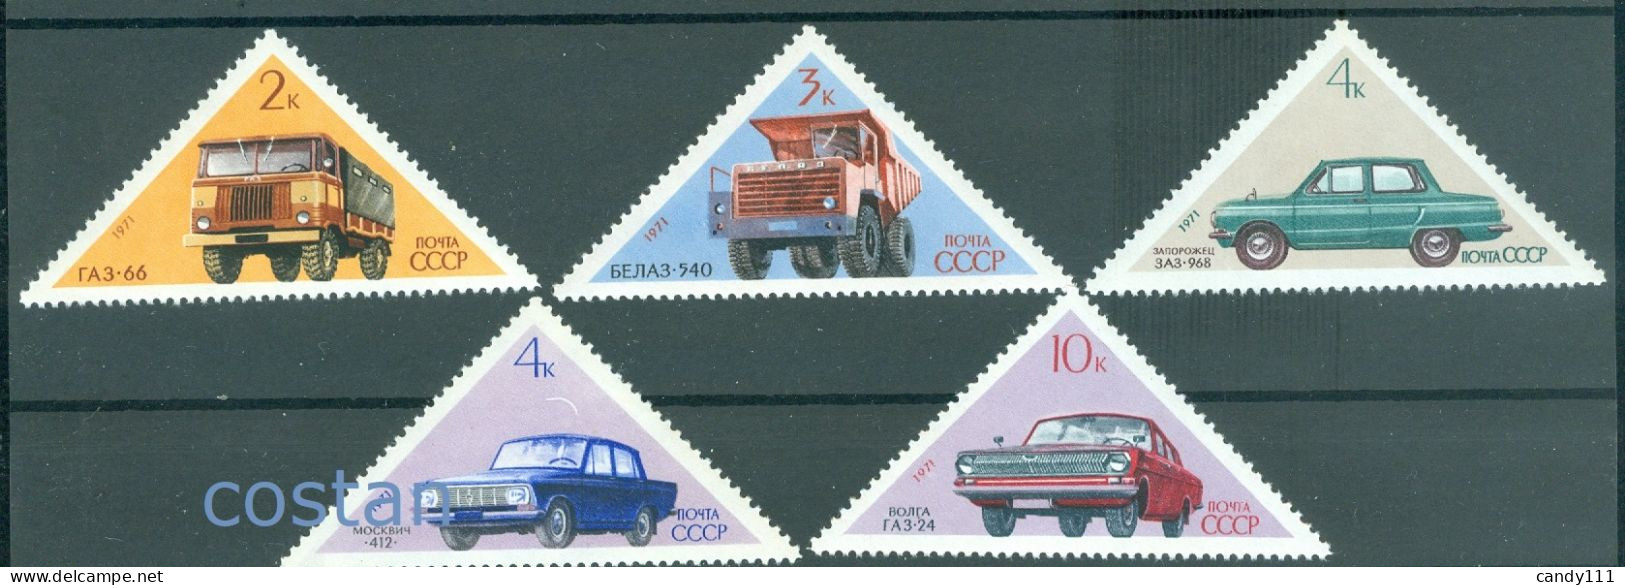 1971 Automobile,Volga,Moskvich,ZAZ Zaporozhets/Ukraine,GAZ Truck,Russia,3878,MNH - Nuovi